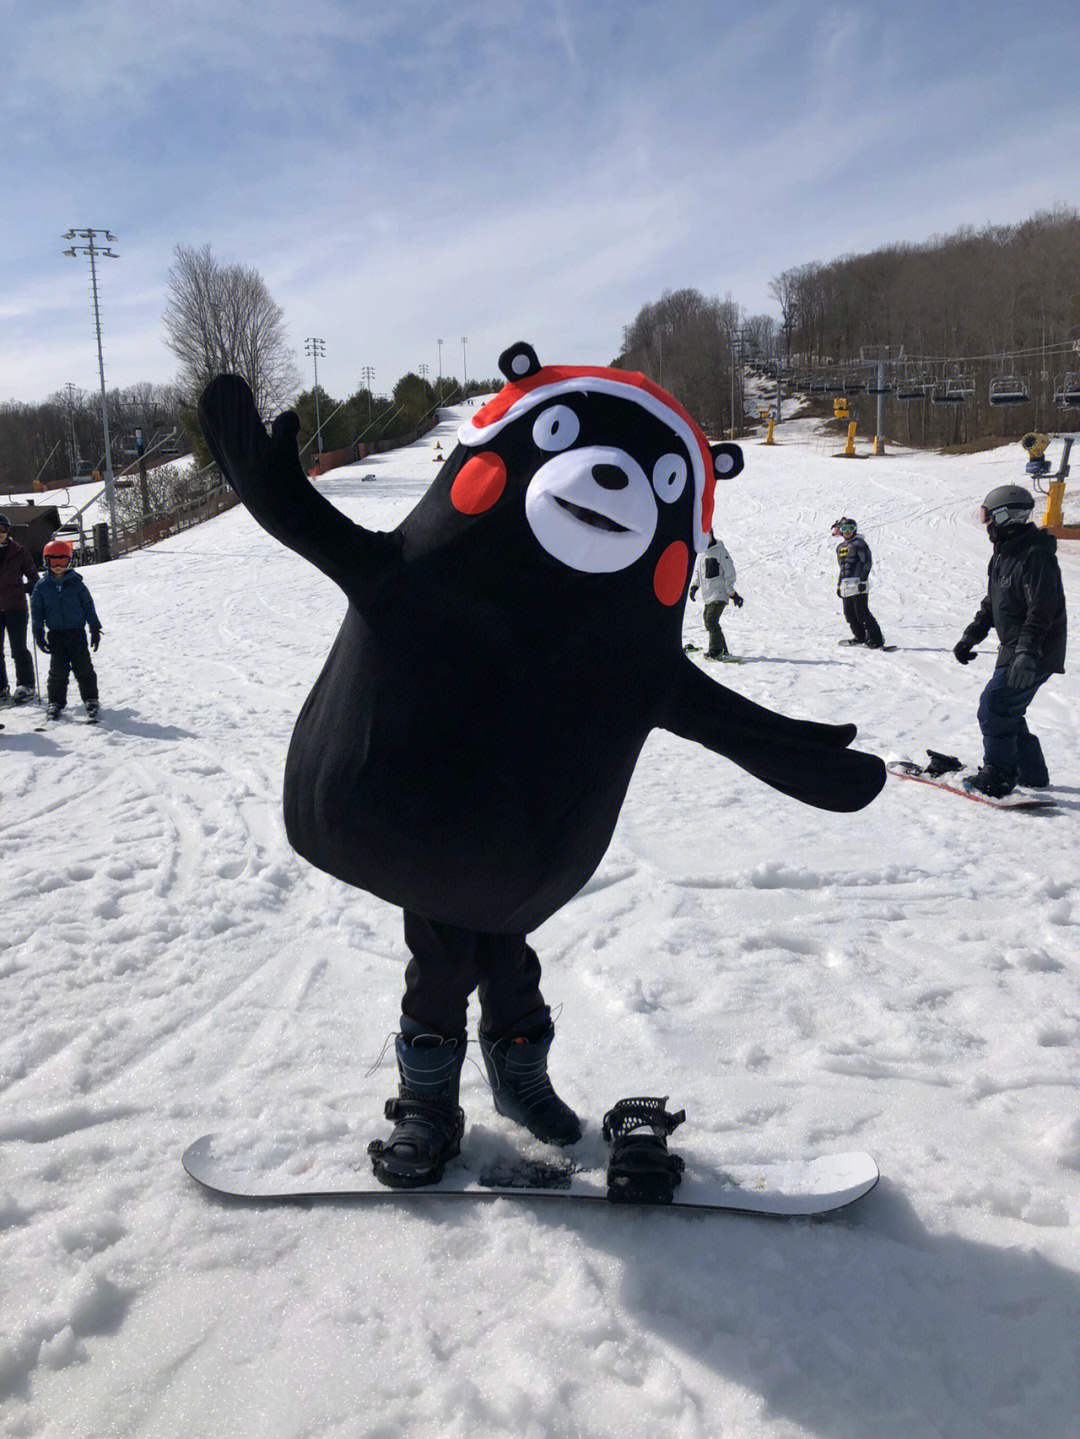 盼雪融融也没有,没想到今天来了熊本熊原来是有人在穿costume装扮滑雪